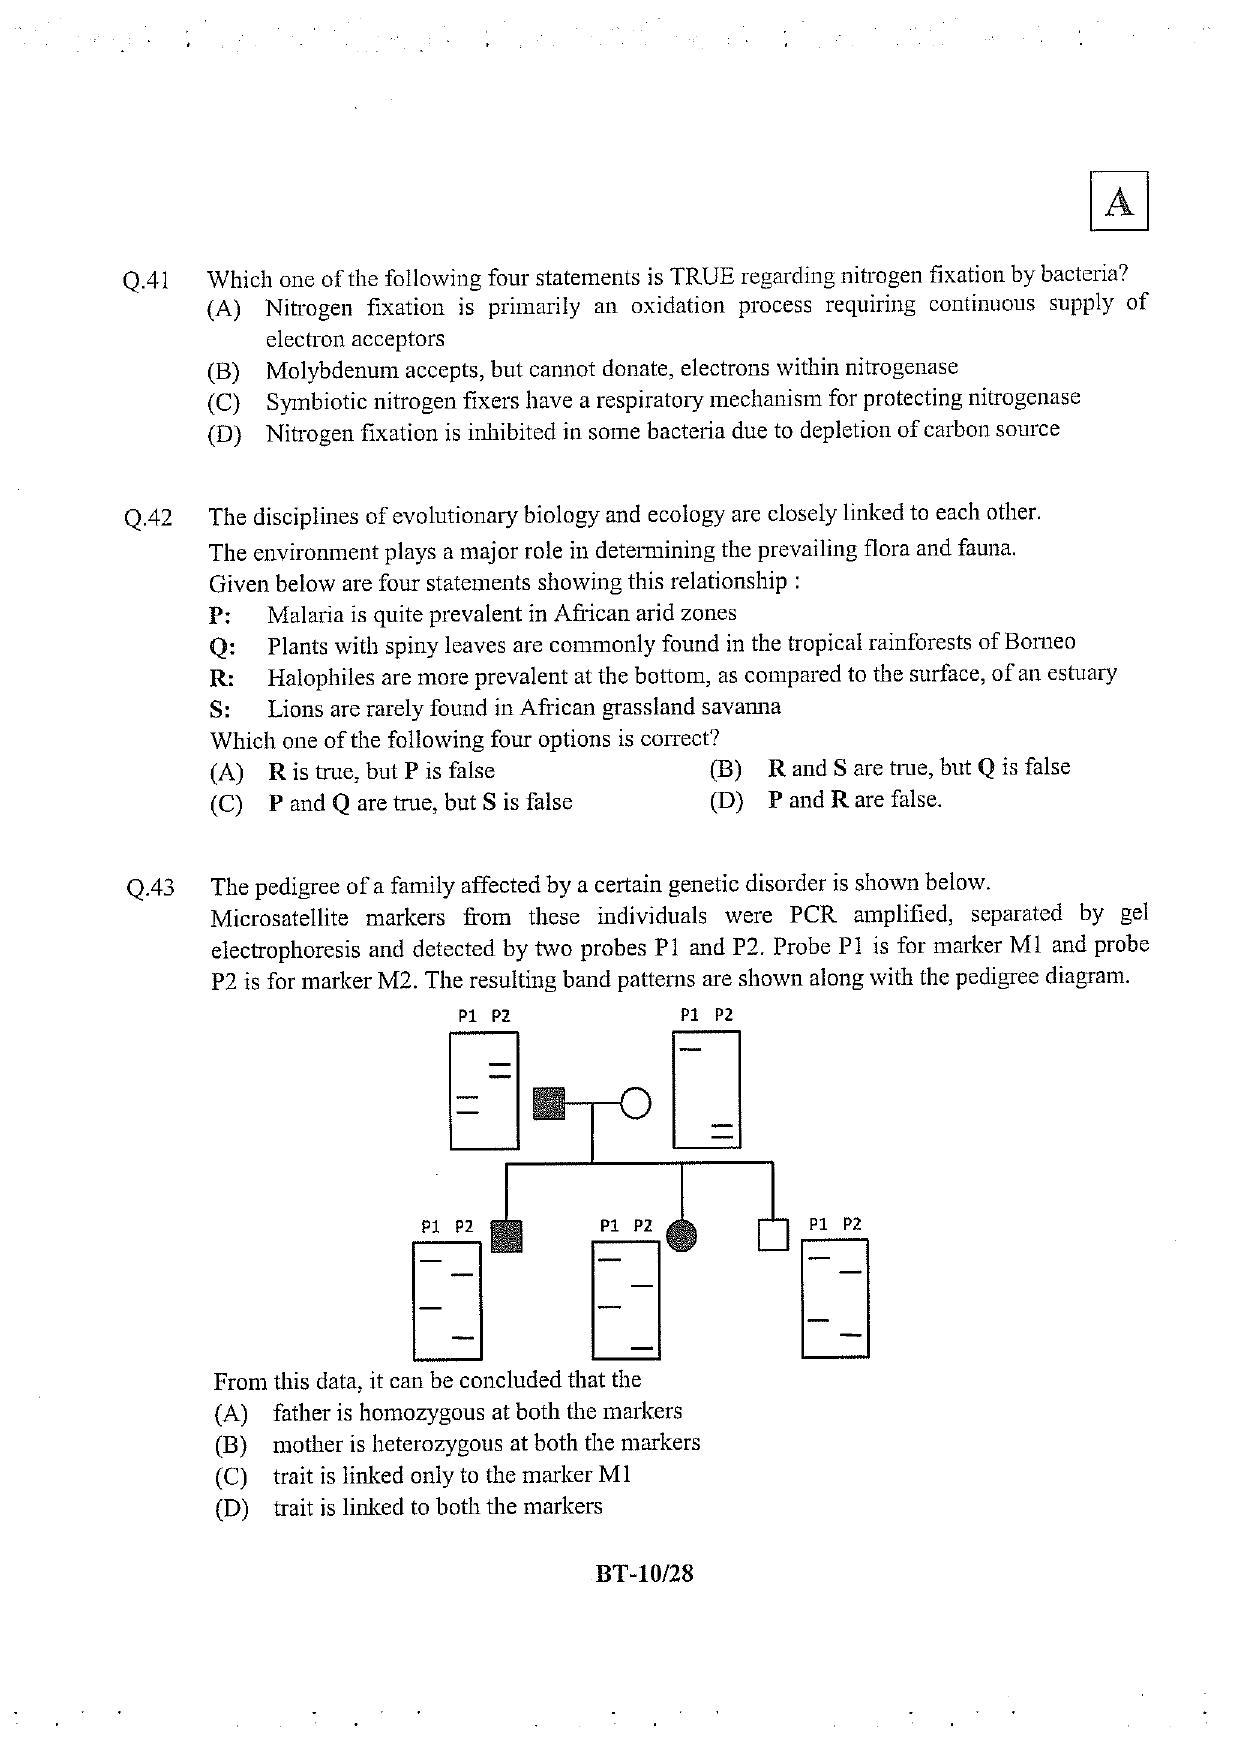 JAM 2013: BT Question Paper - Page 11